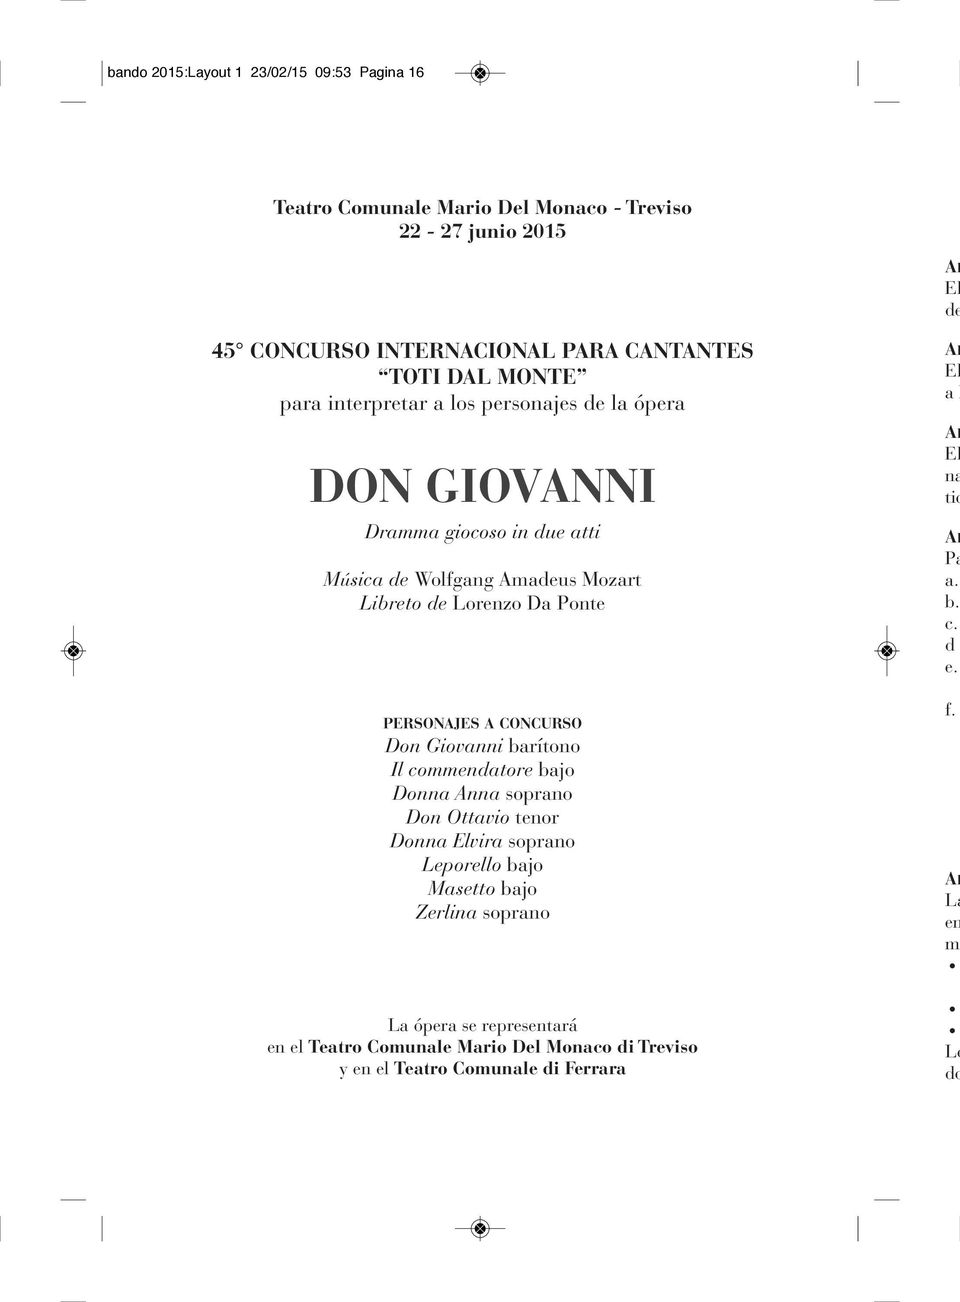 PErsonajEs a concurso Don Giovanni barítono Il commendatore bajo Donna Anna soprano Don Ottavio tenor Donna Elvira soprano Leporello bajo Masetto bajo Zerlina